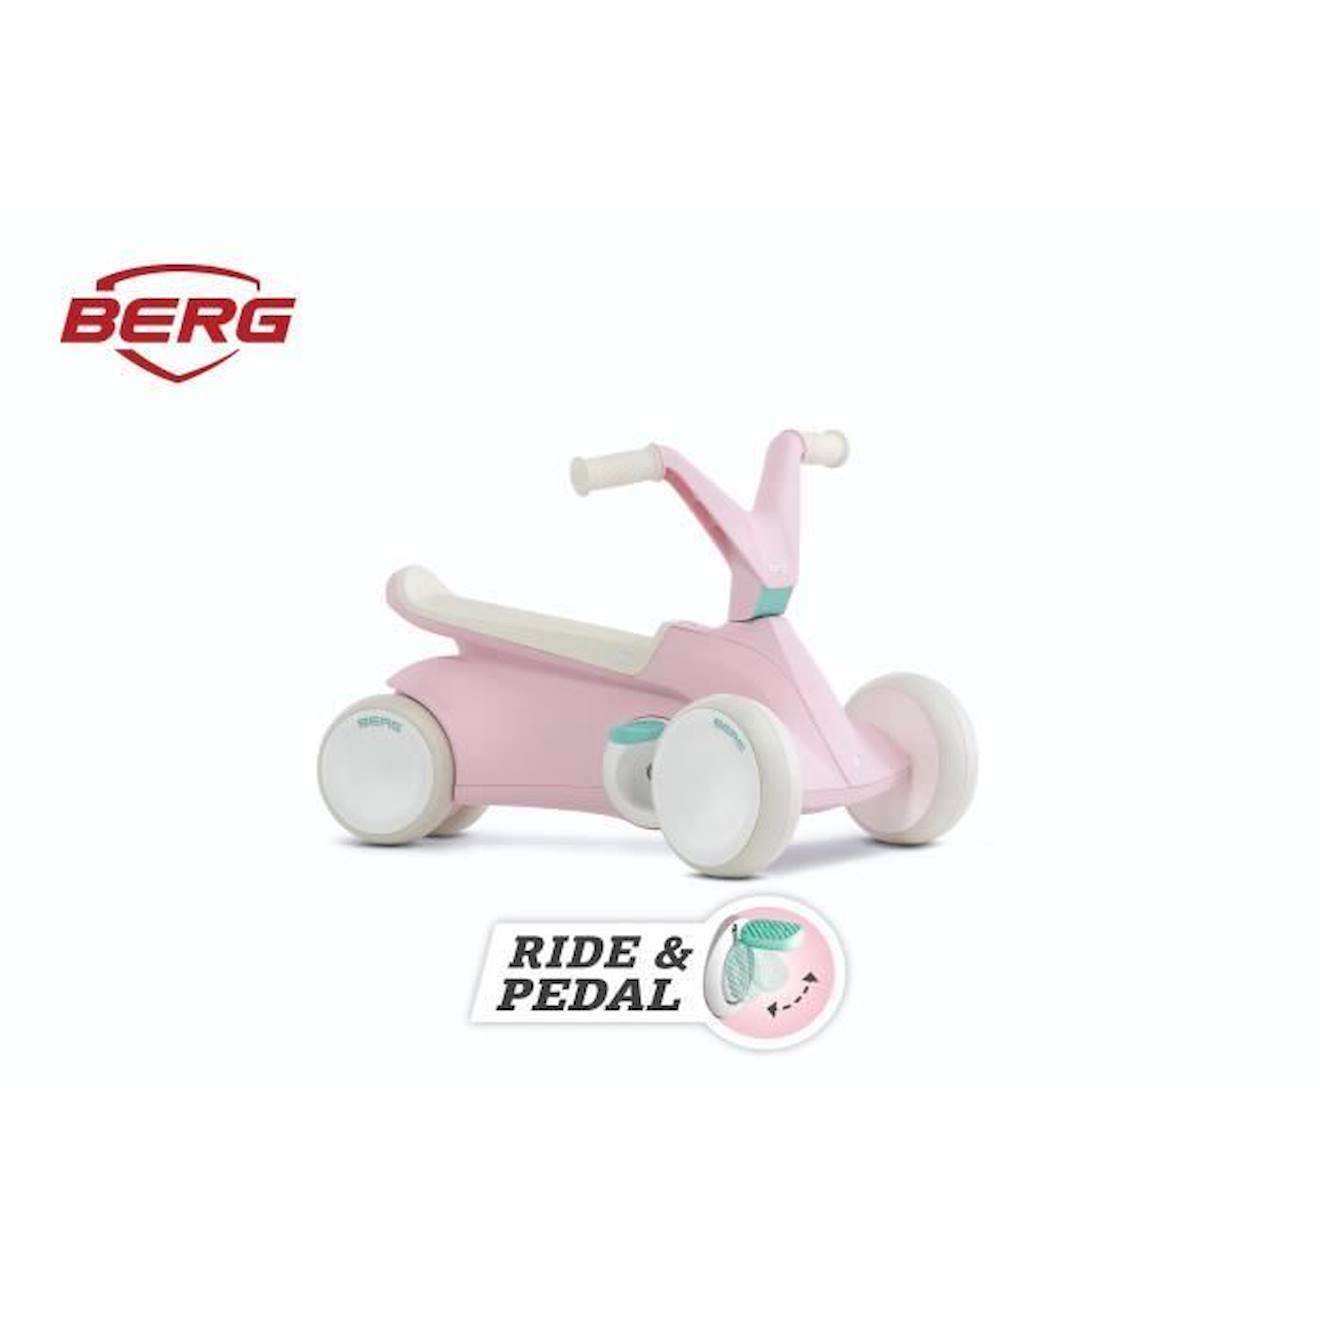 Kart À Pédales - Berg - Go² Pink - Pour Enfants De 10 À 30 Mois - Pliable Et Sécurisé Rose